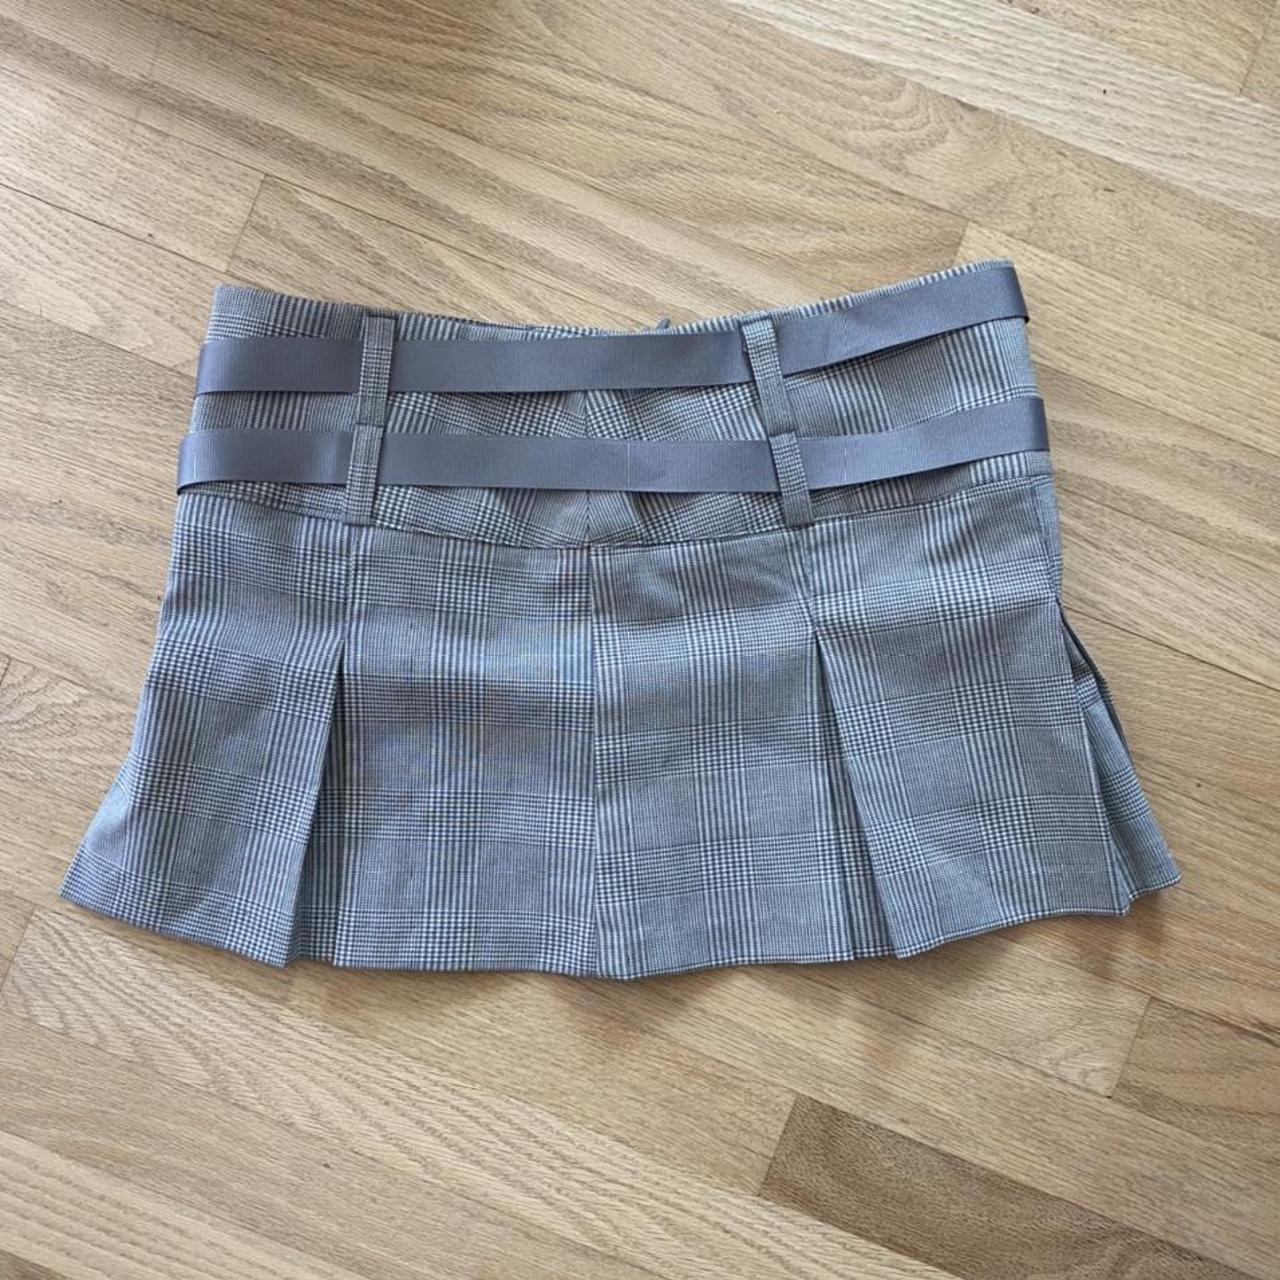 Product Image 3 - Vintage bondage gray miniskirt can